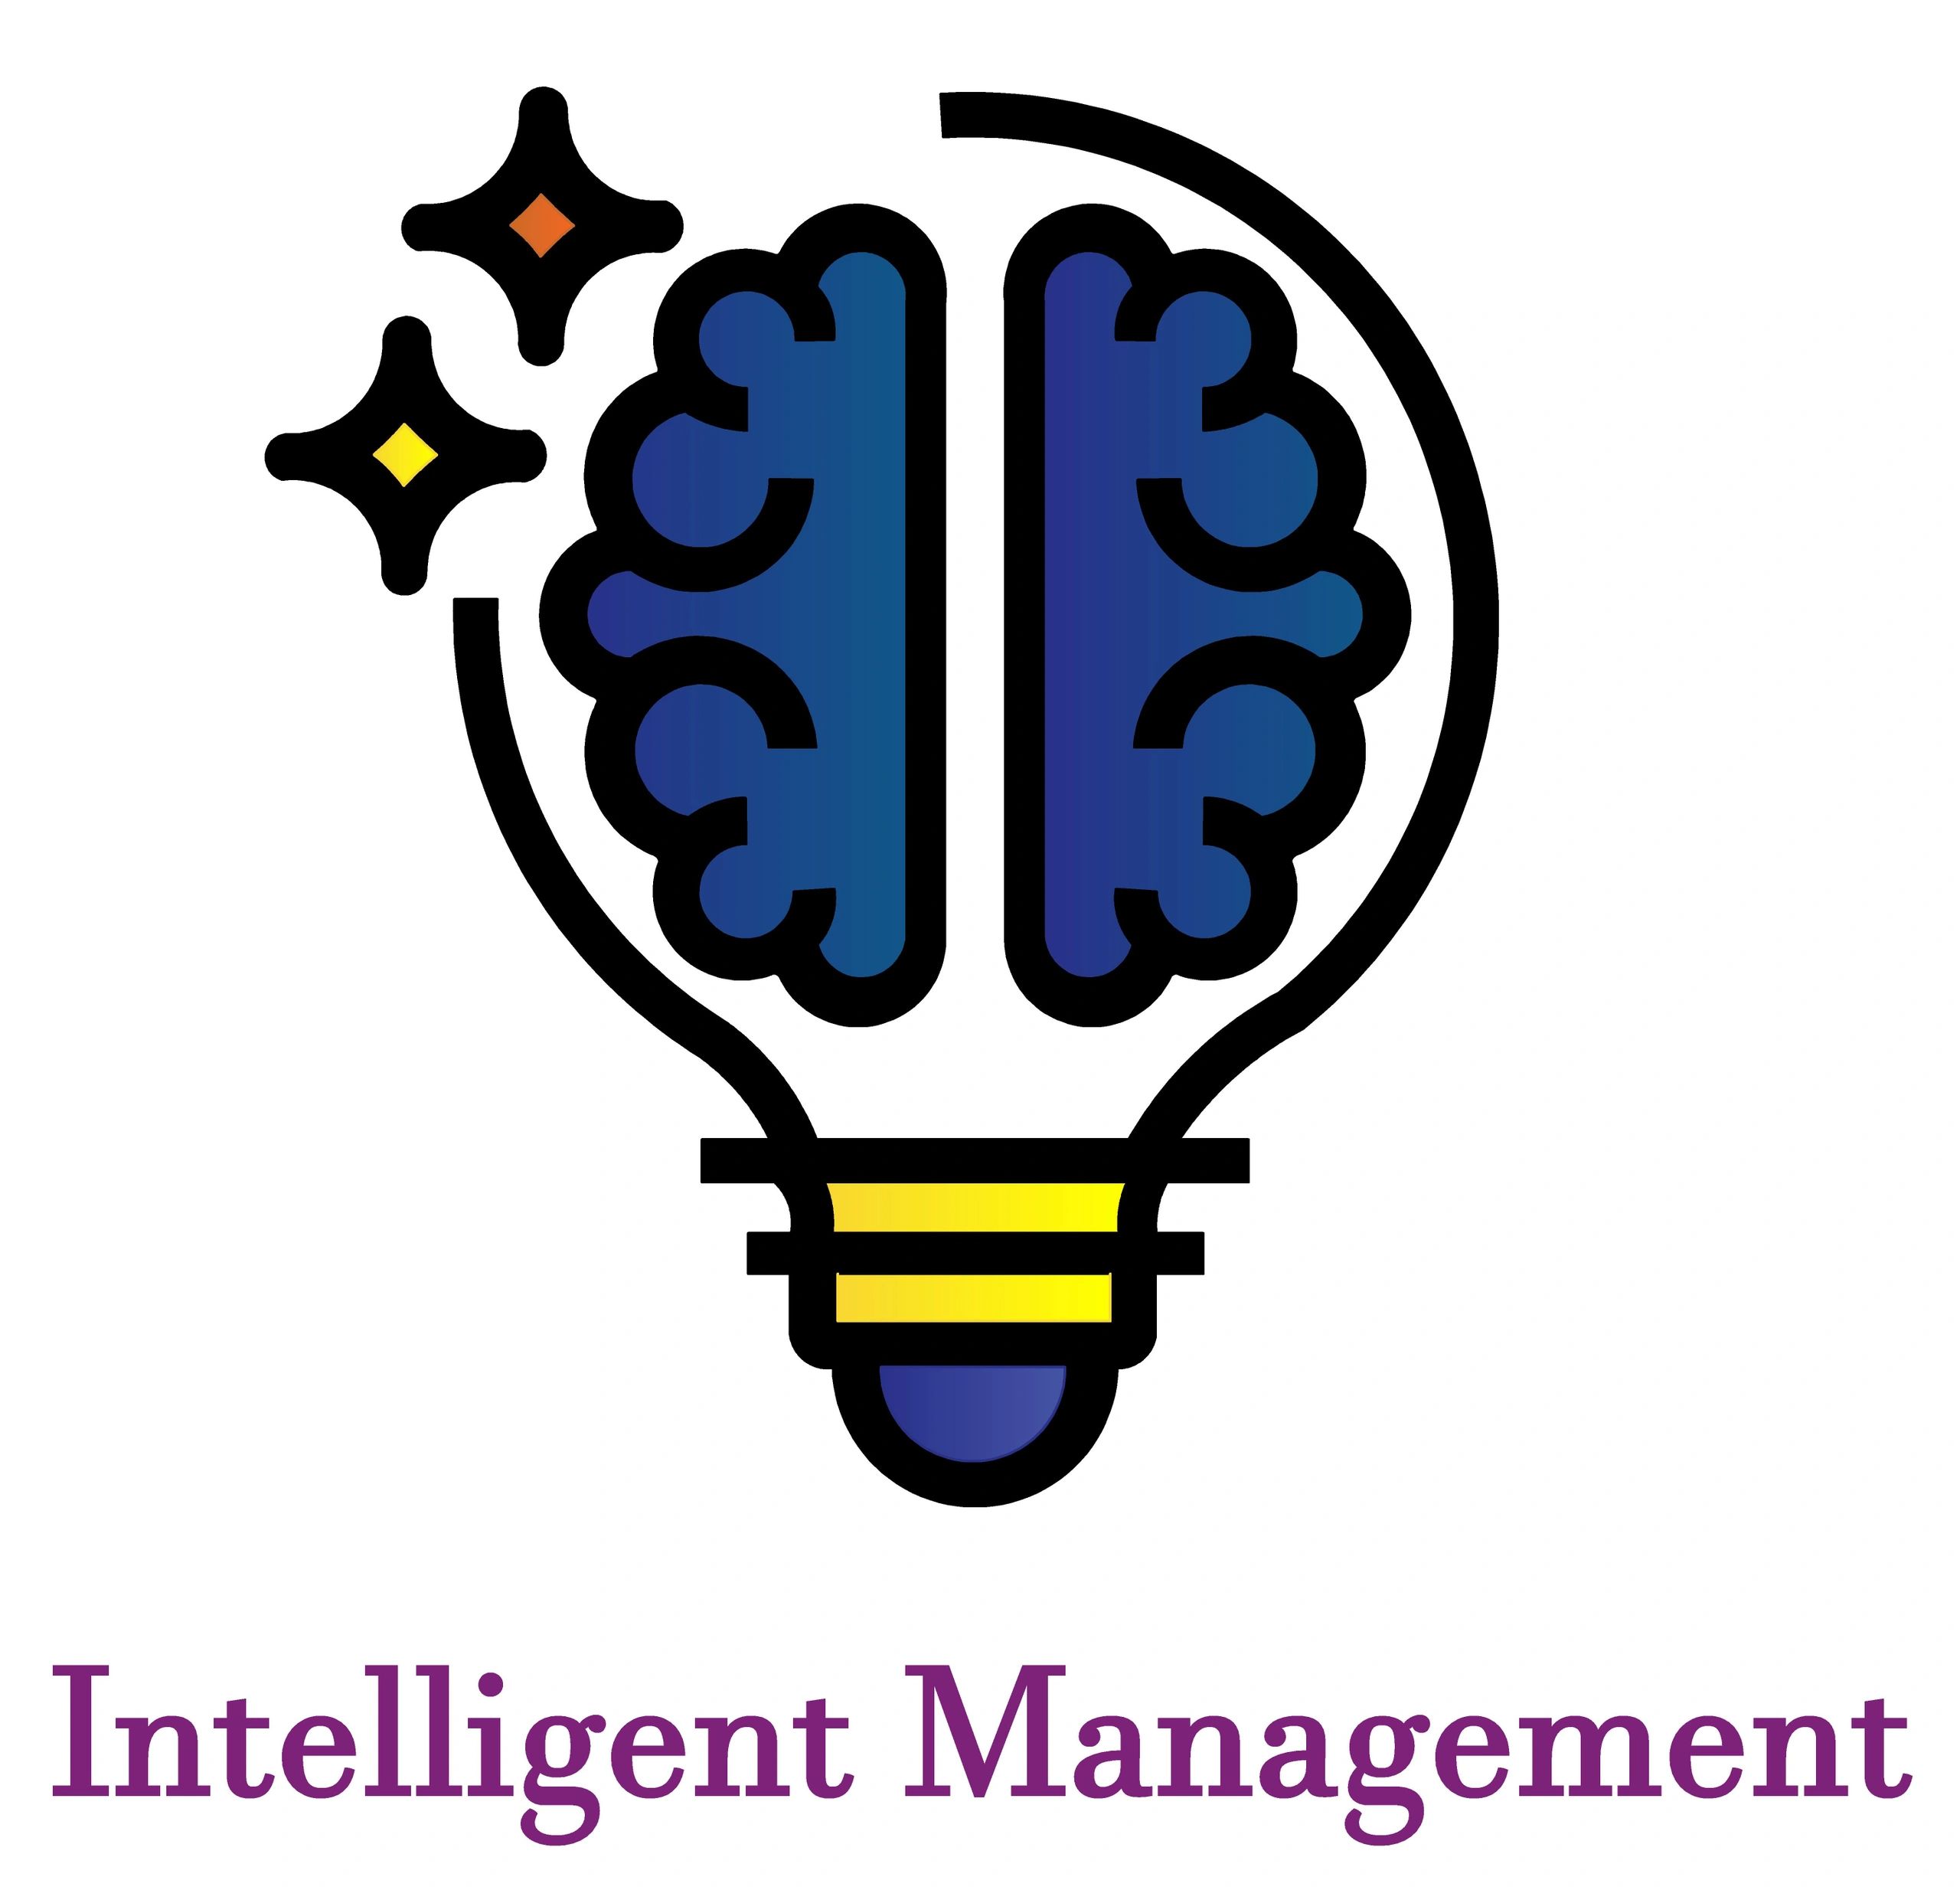 (c) Intelligent-management.com